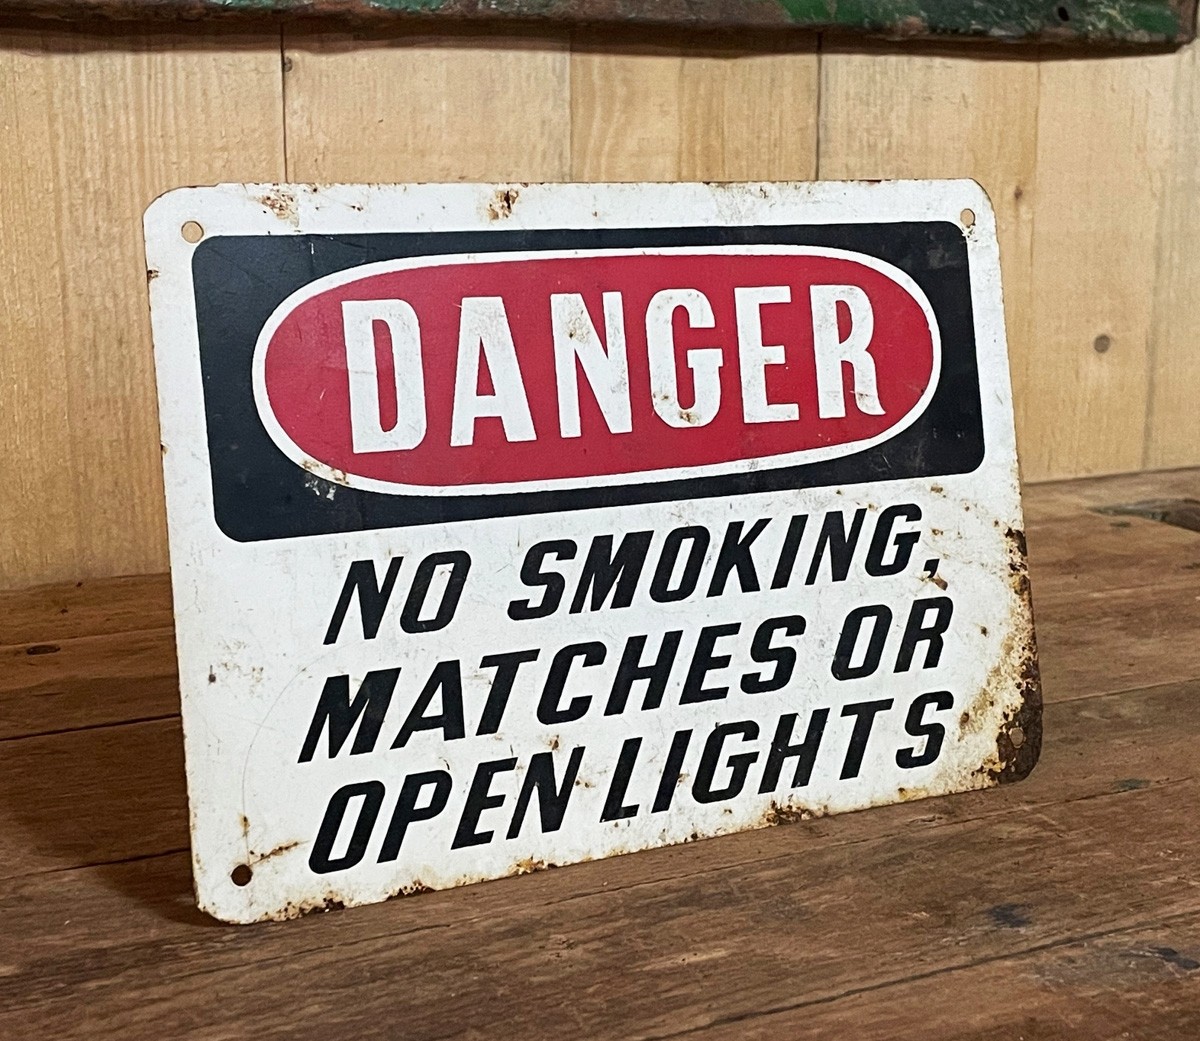 Danger - No Smoking, Matches or Open Lights Schild